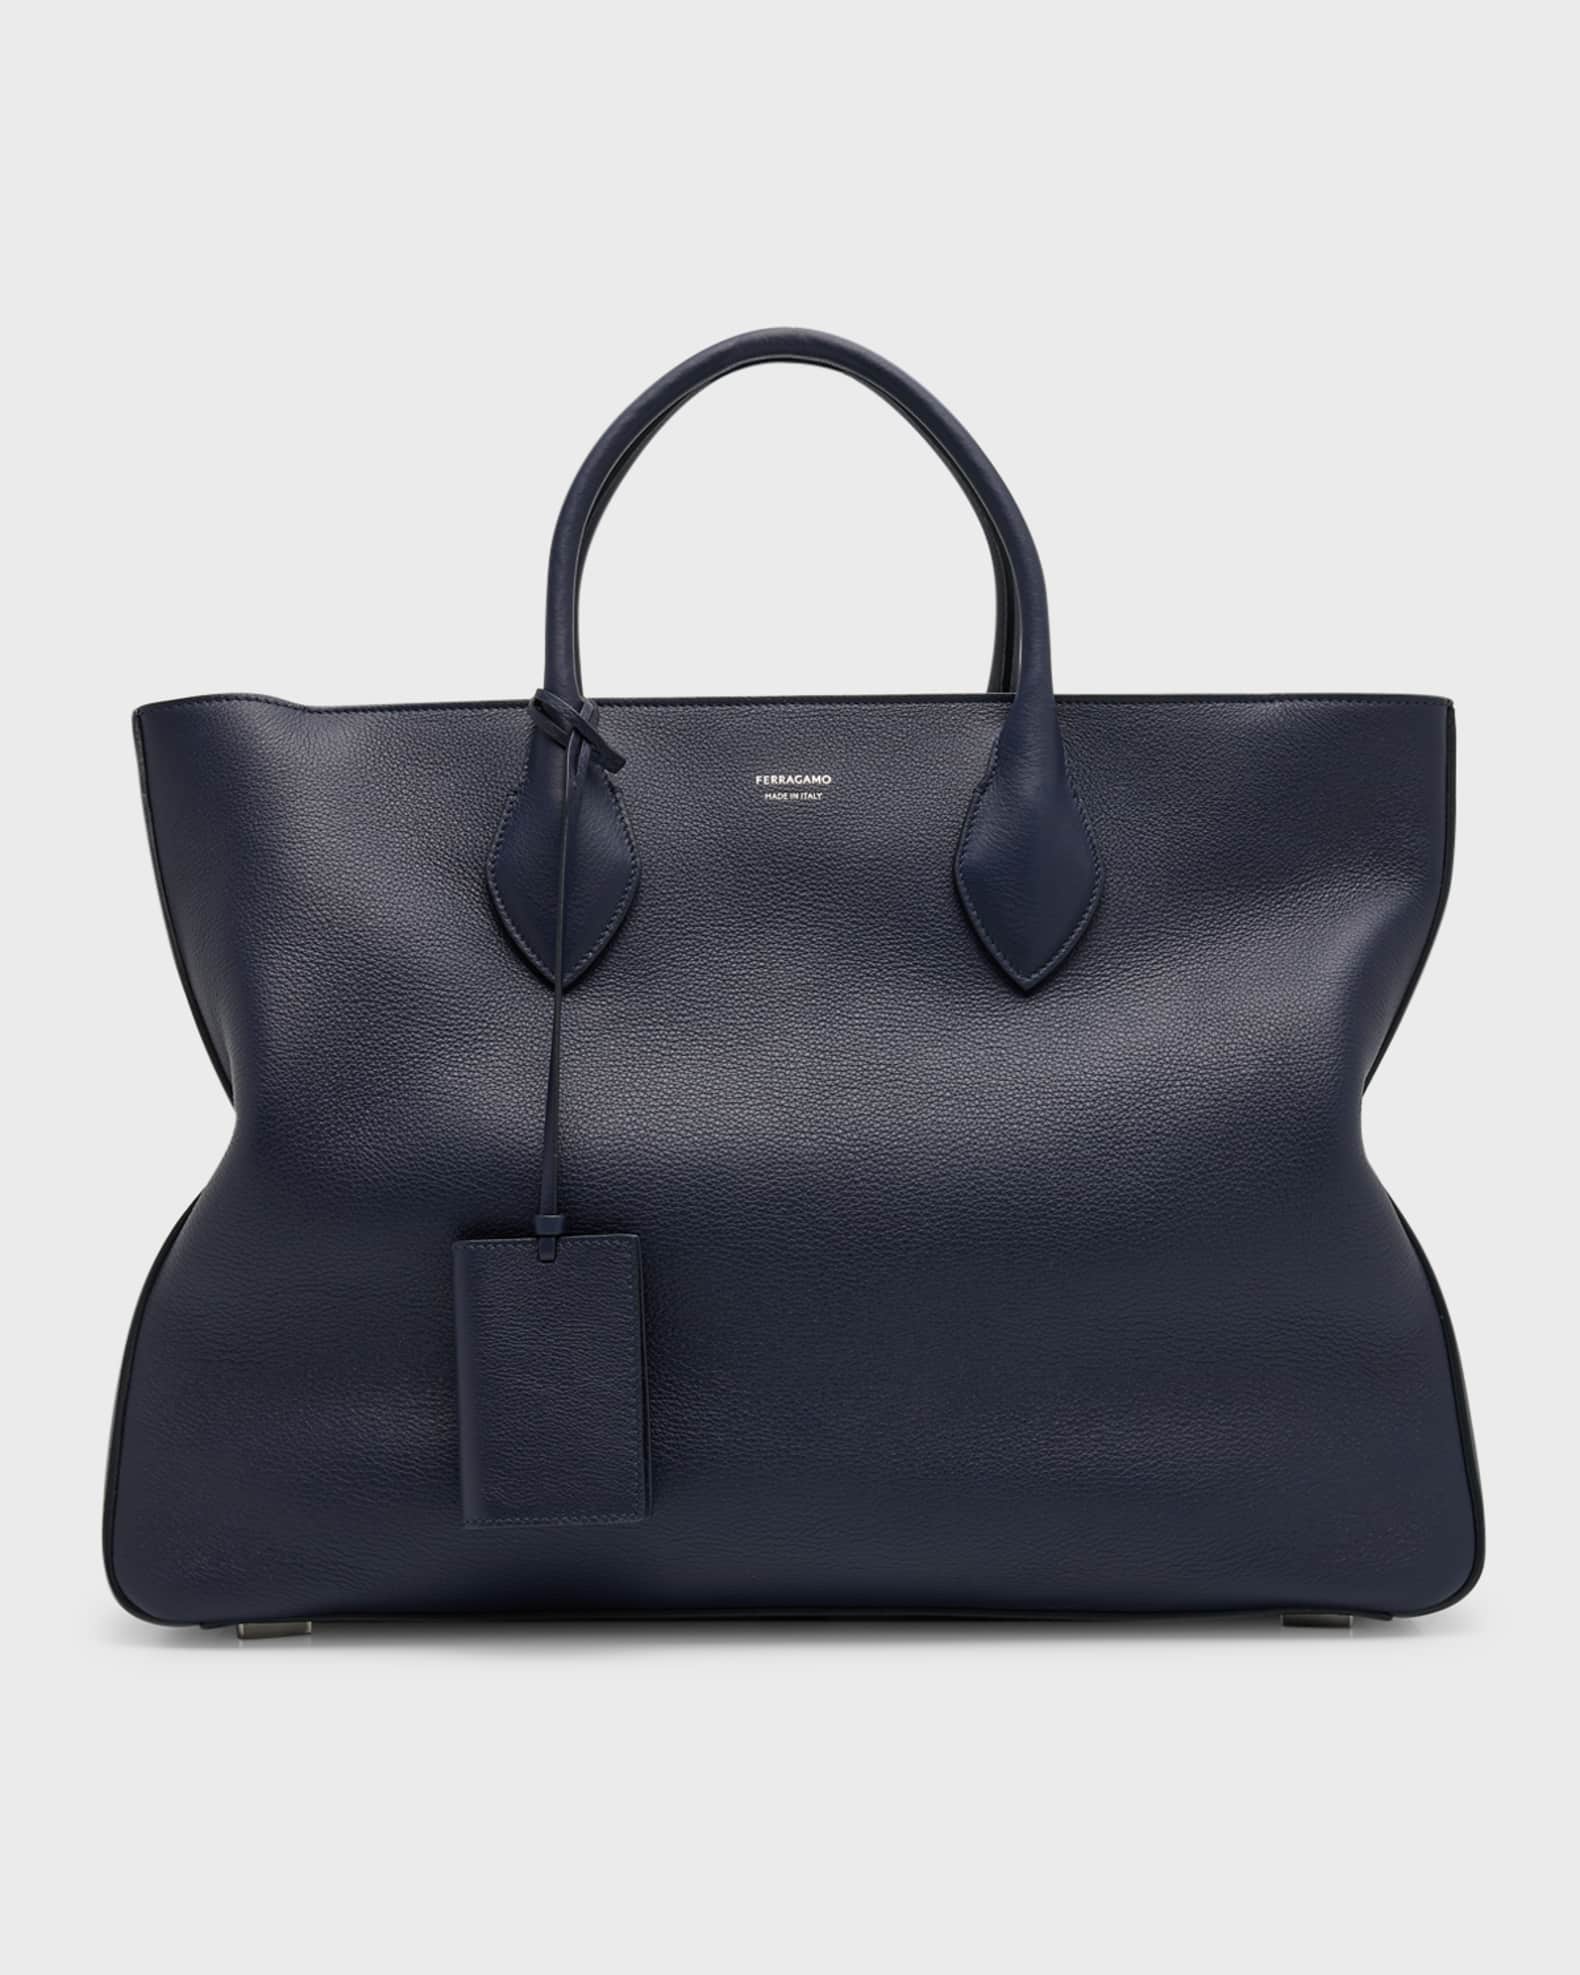 Ferragamo Men's Large Leather Tote Bag | Neiman Marcus